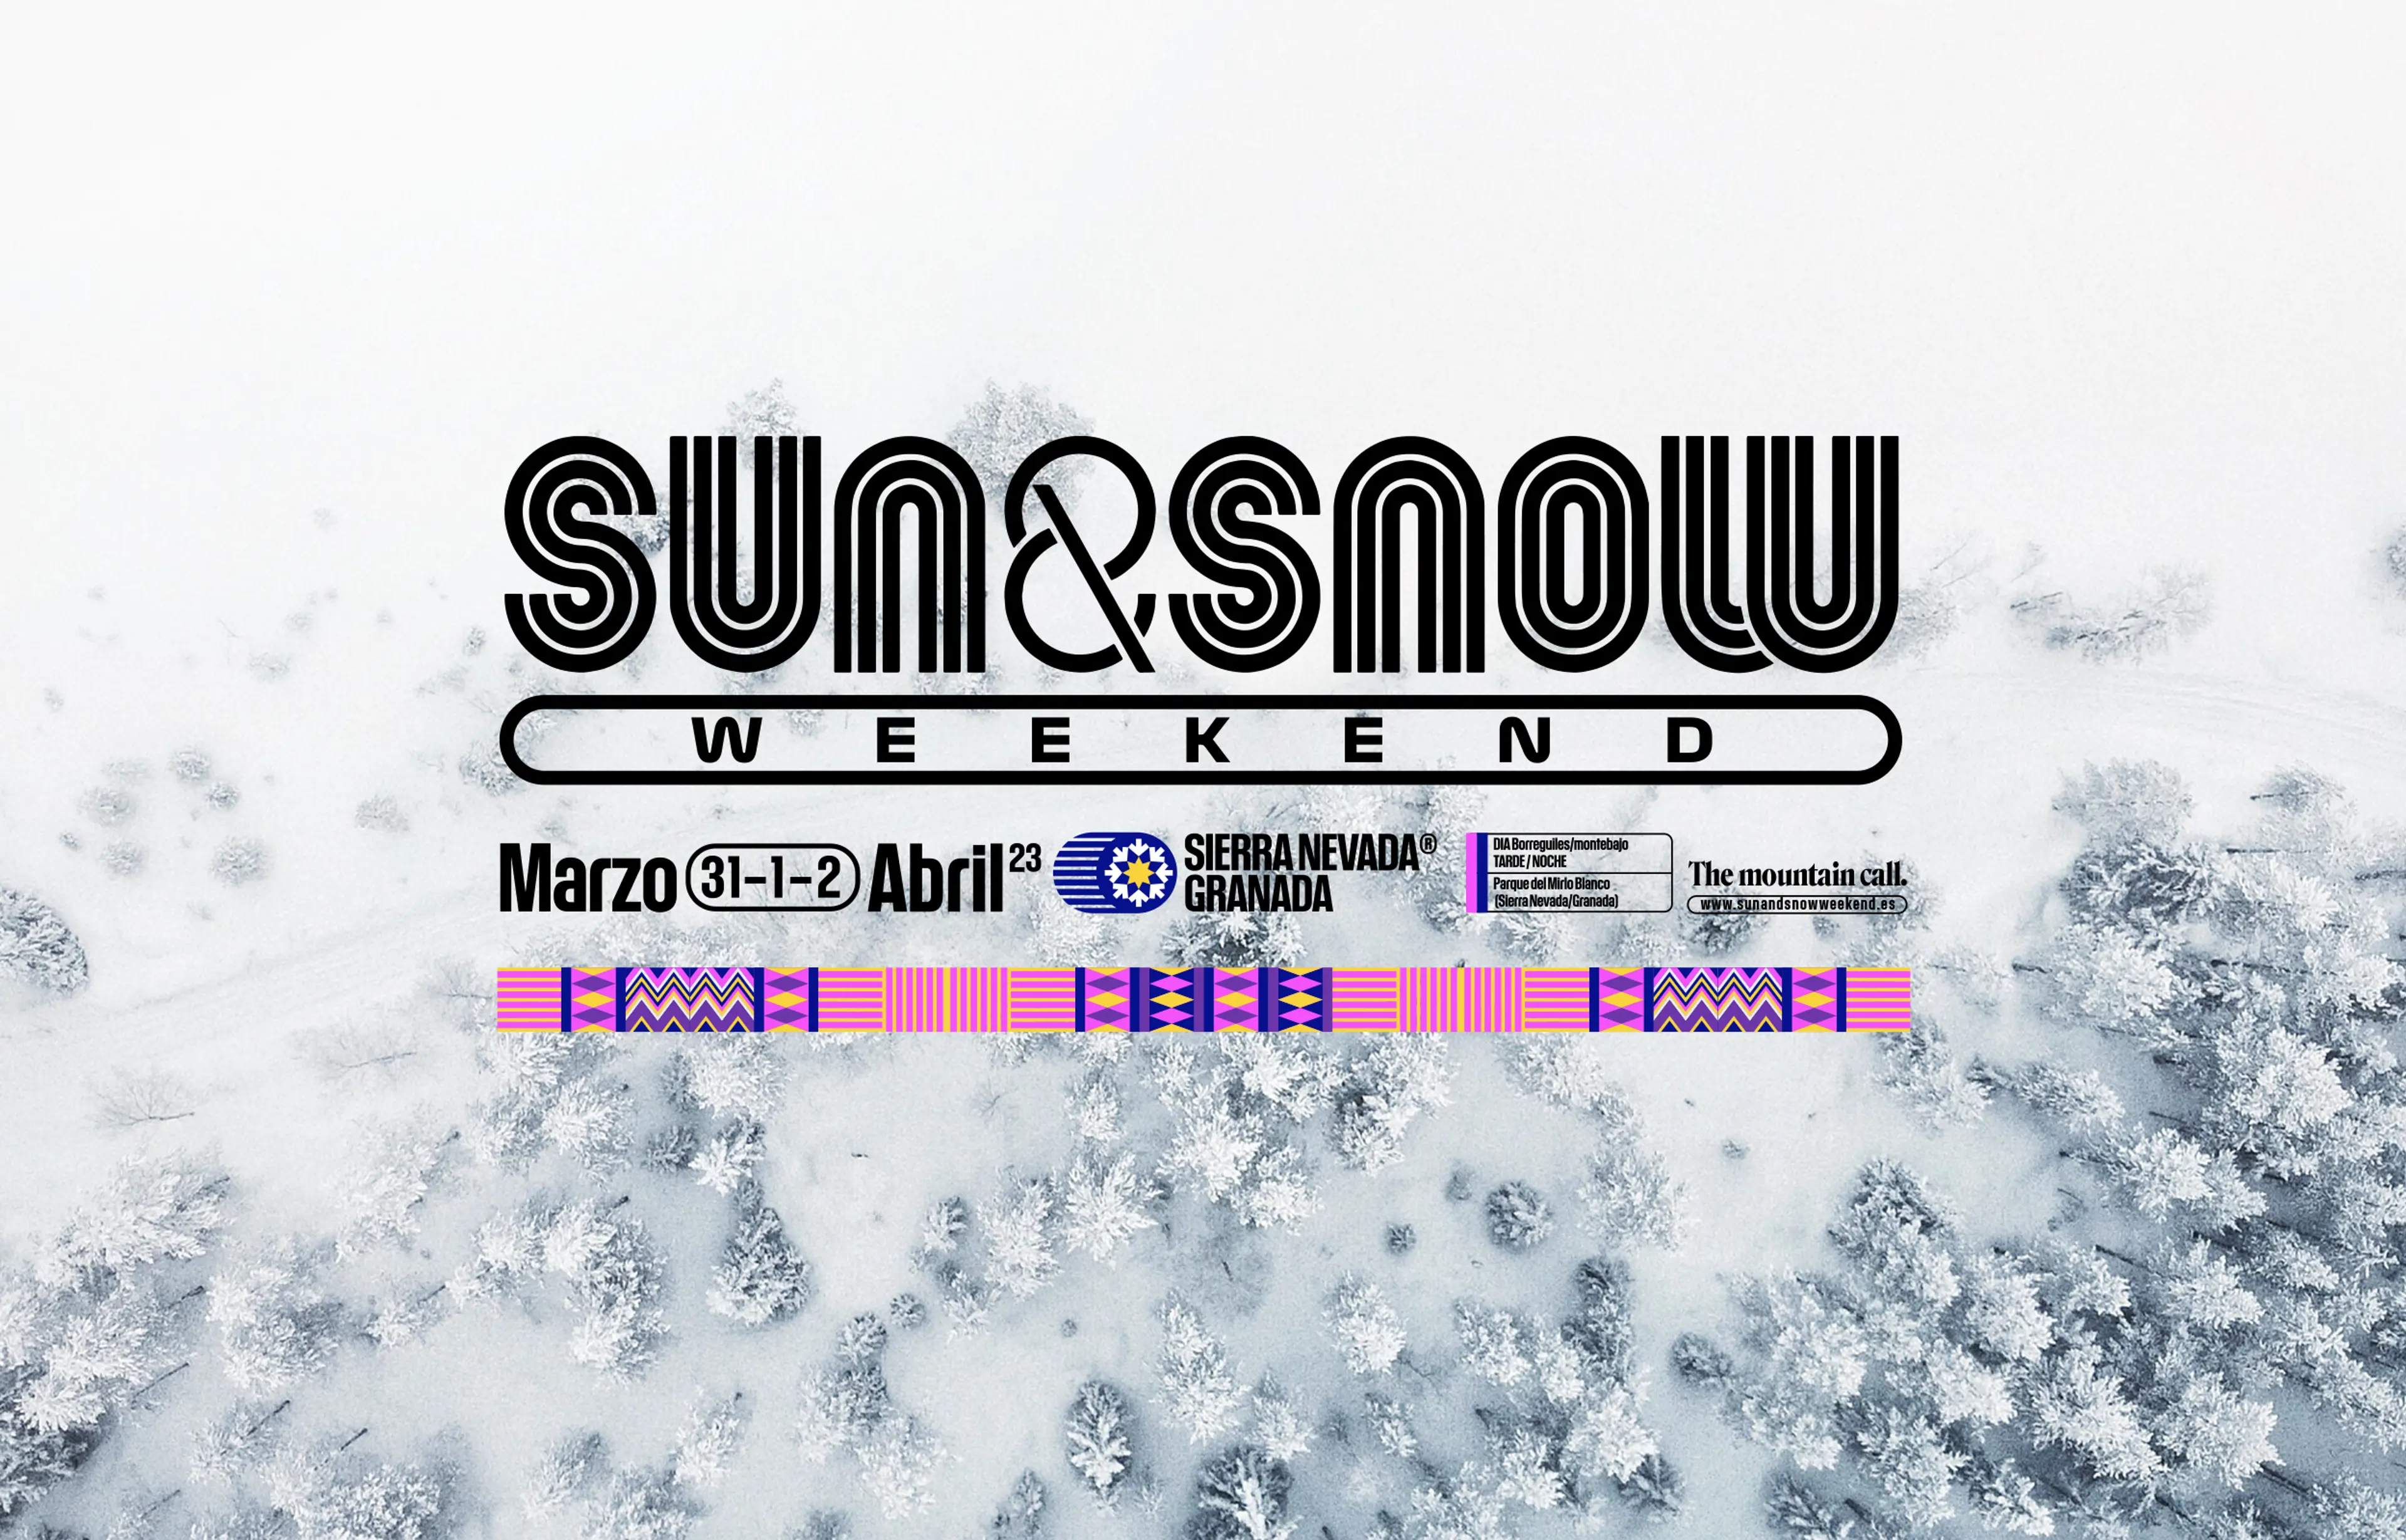 Portada Del Evento Sun And Snow23 Wegow V1 Copy